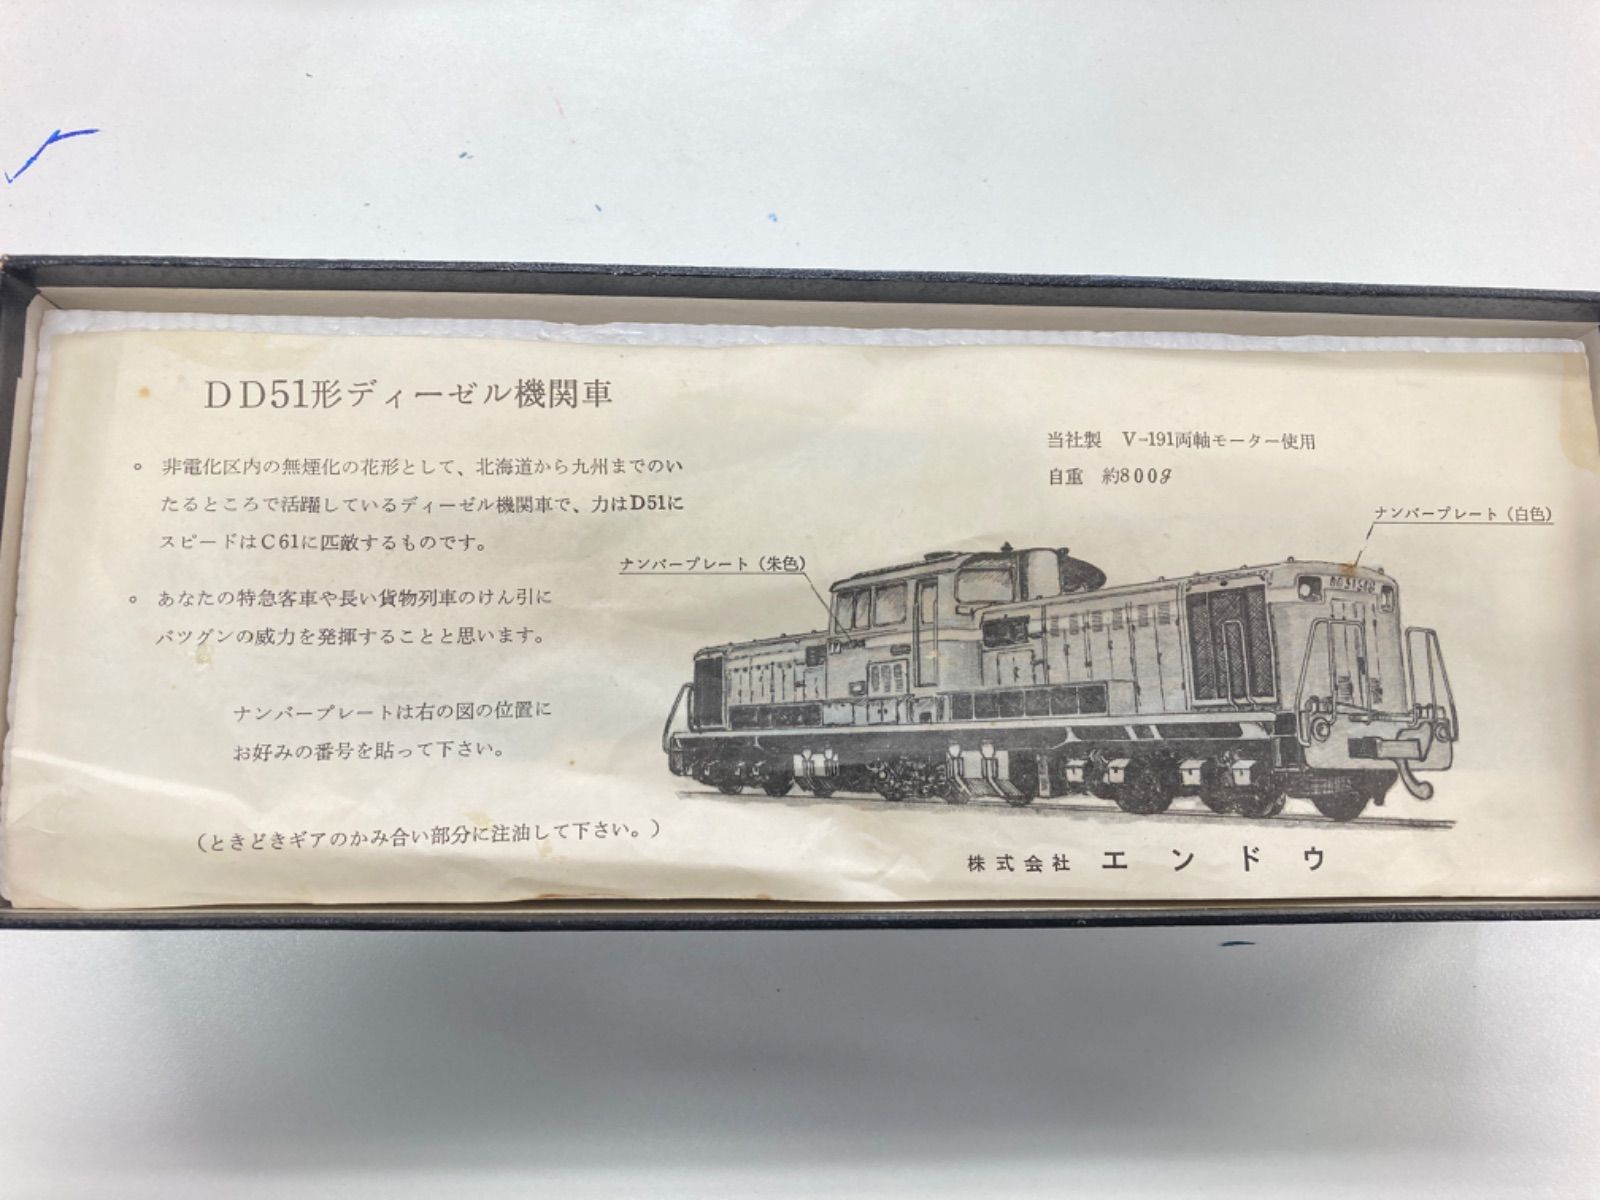 DD51ディーゼル機関車ナンバープレート - 鉄道